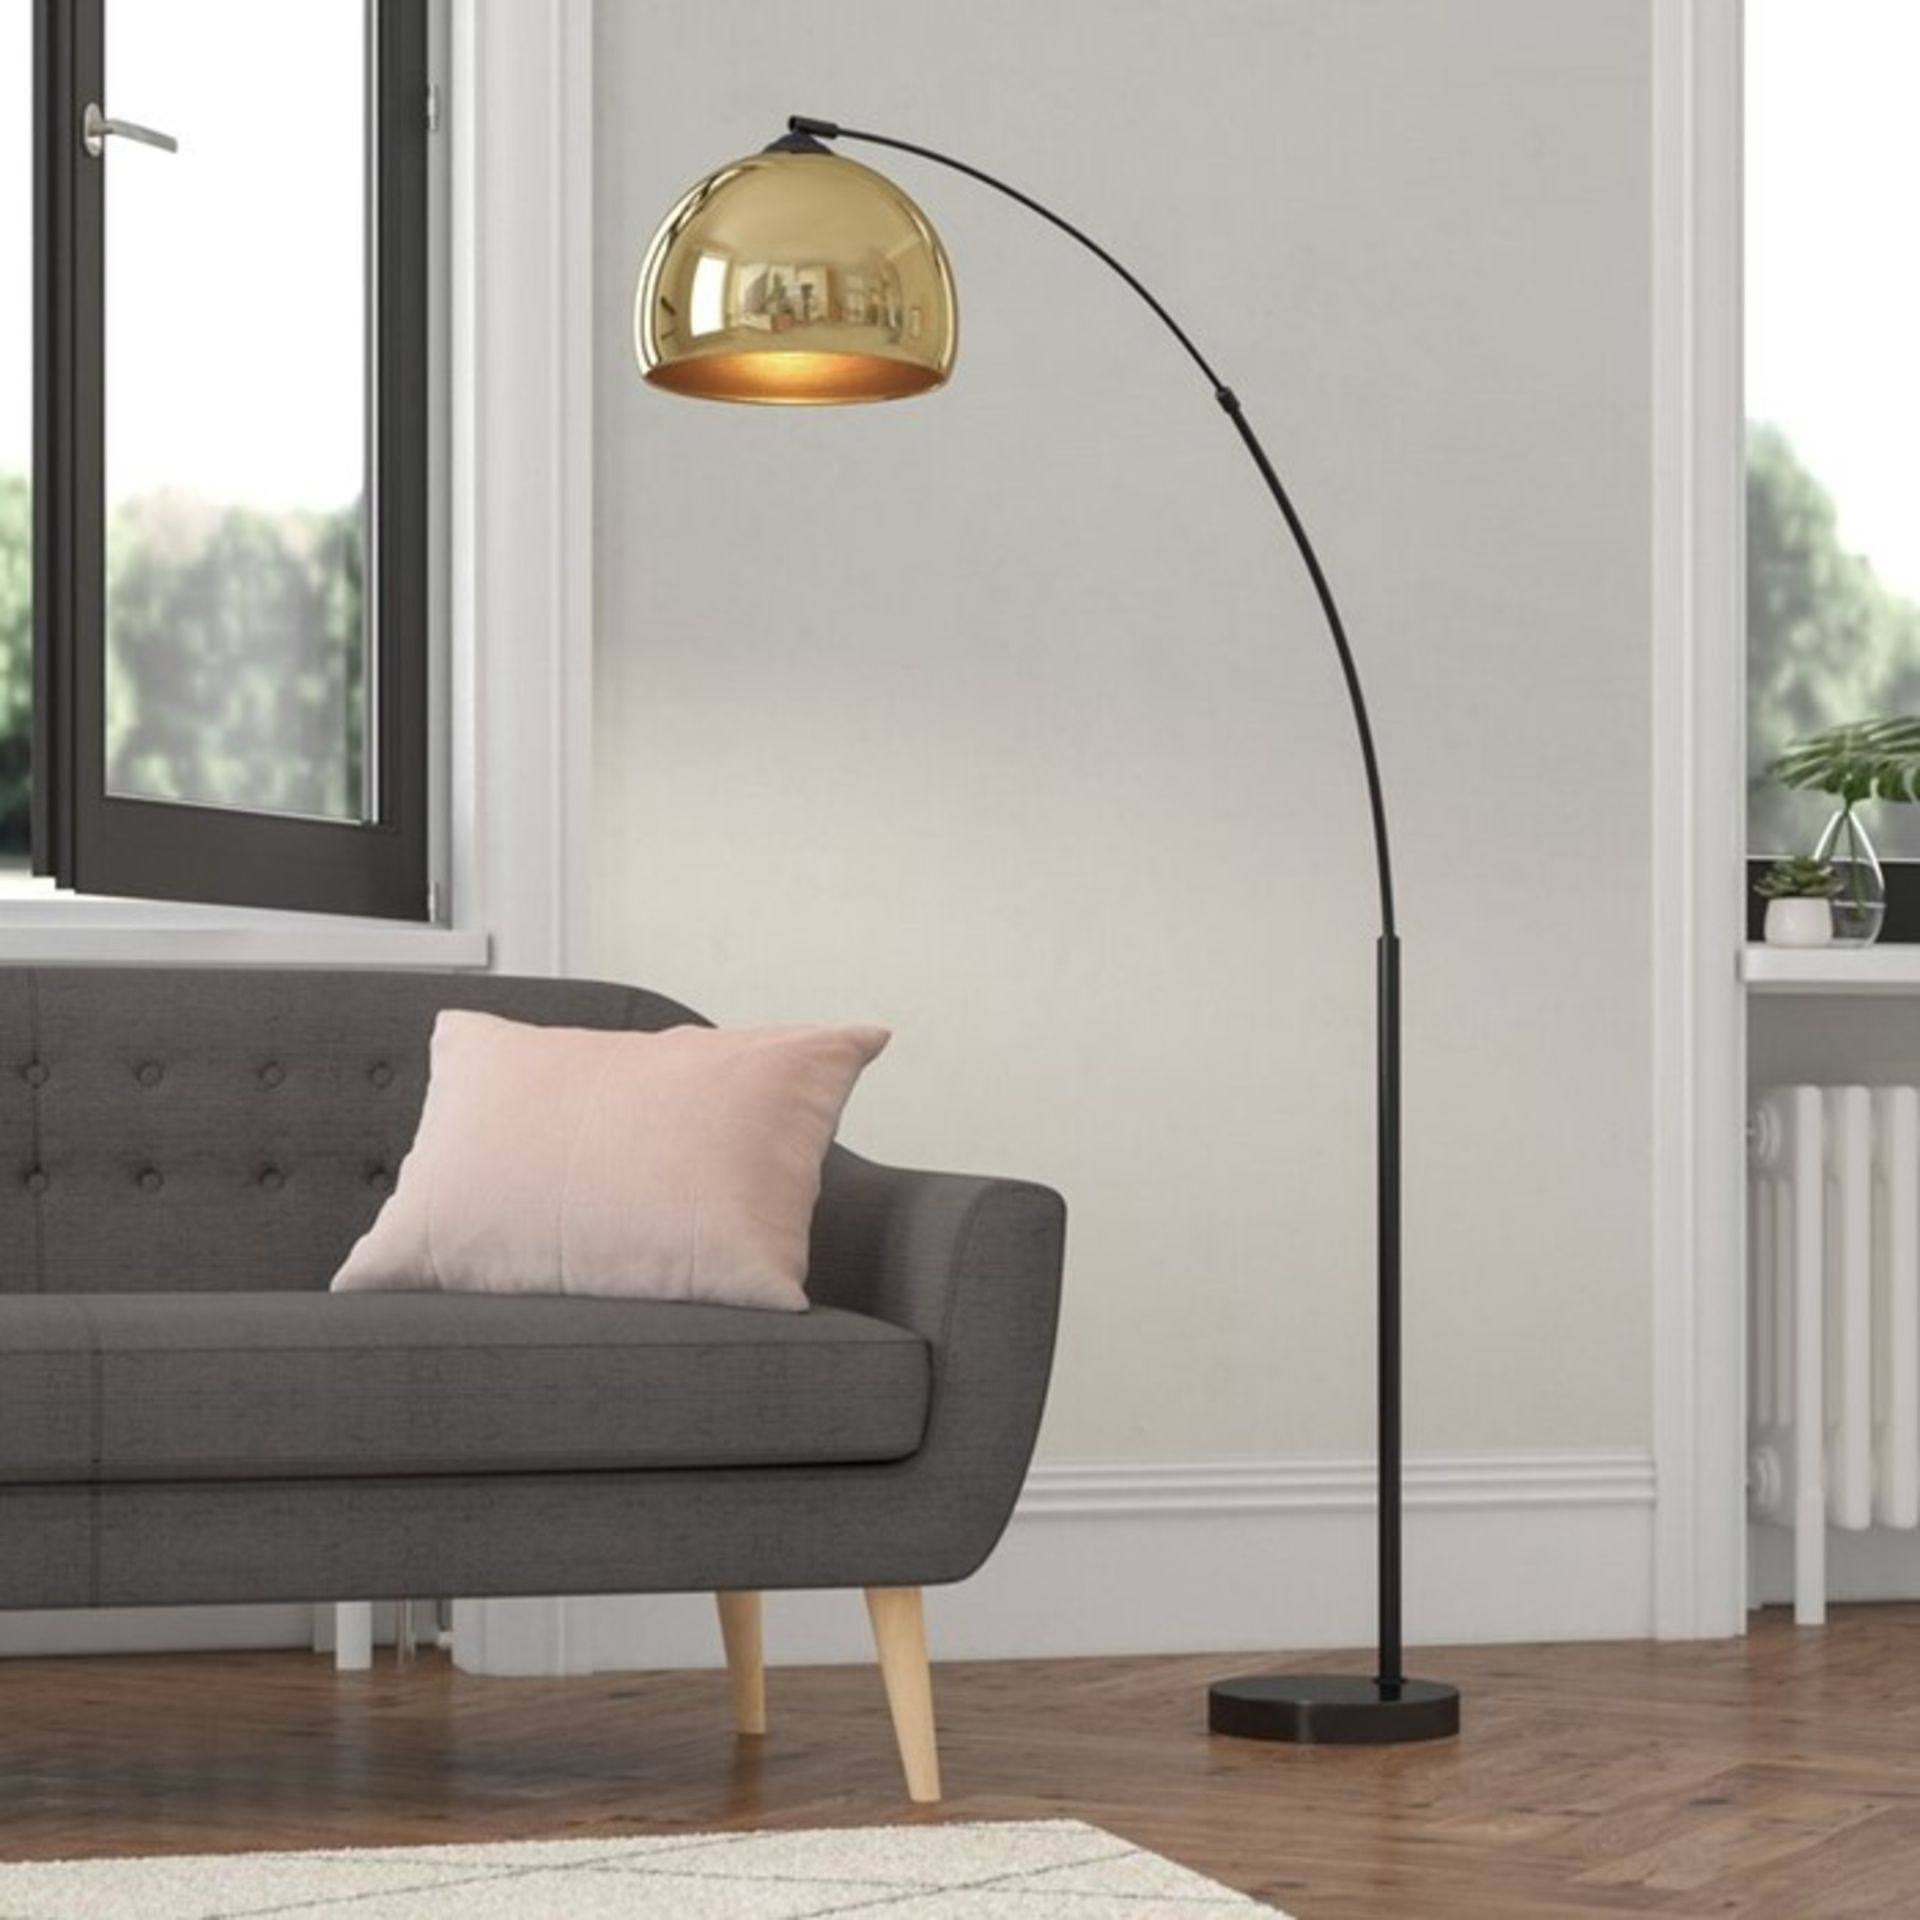 Fairmont Park, Loreta 170cm Arched Floor Lamp (BLACK & GOLD) - RRP £103.99 (VSNR1039 - 16872/41) 3G